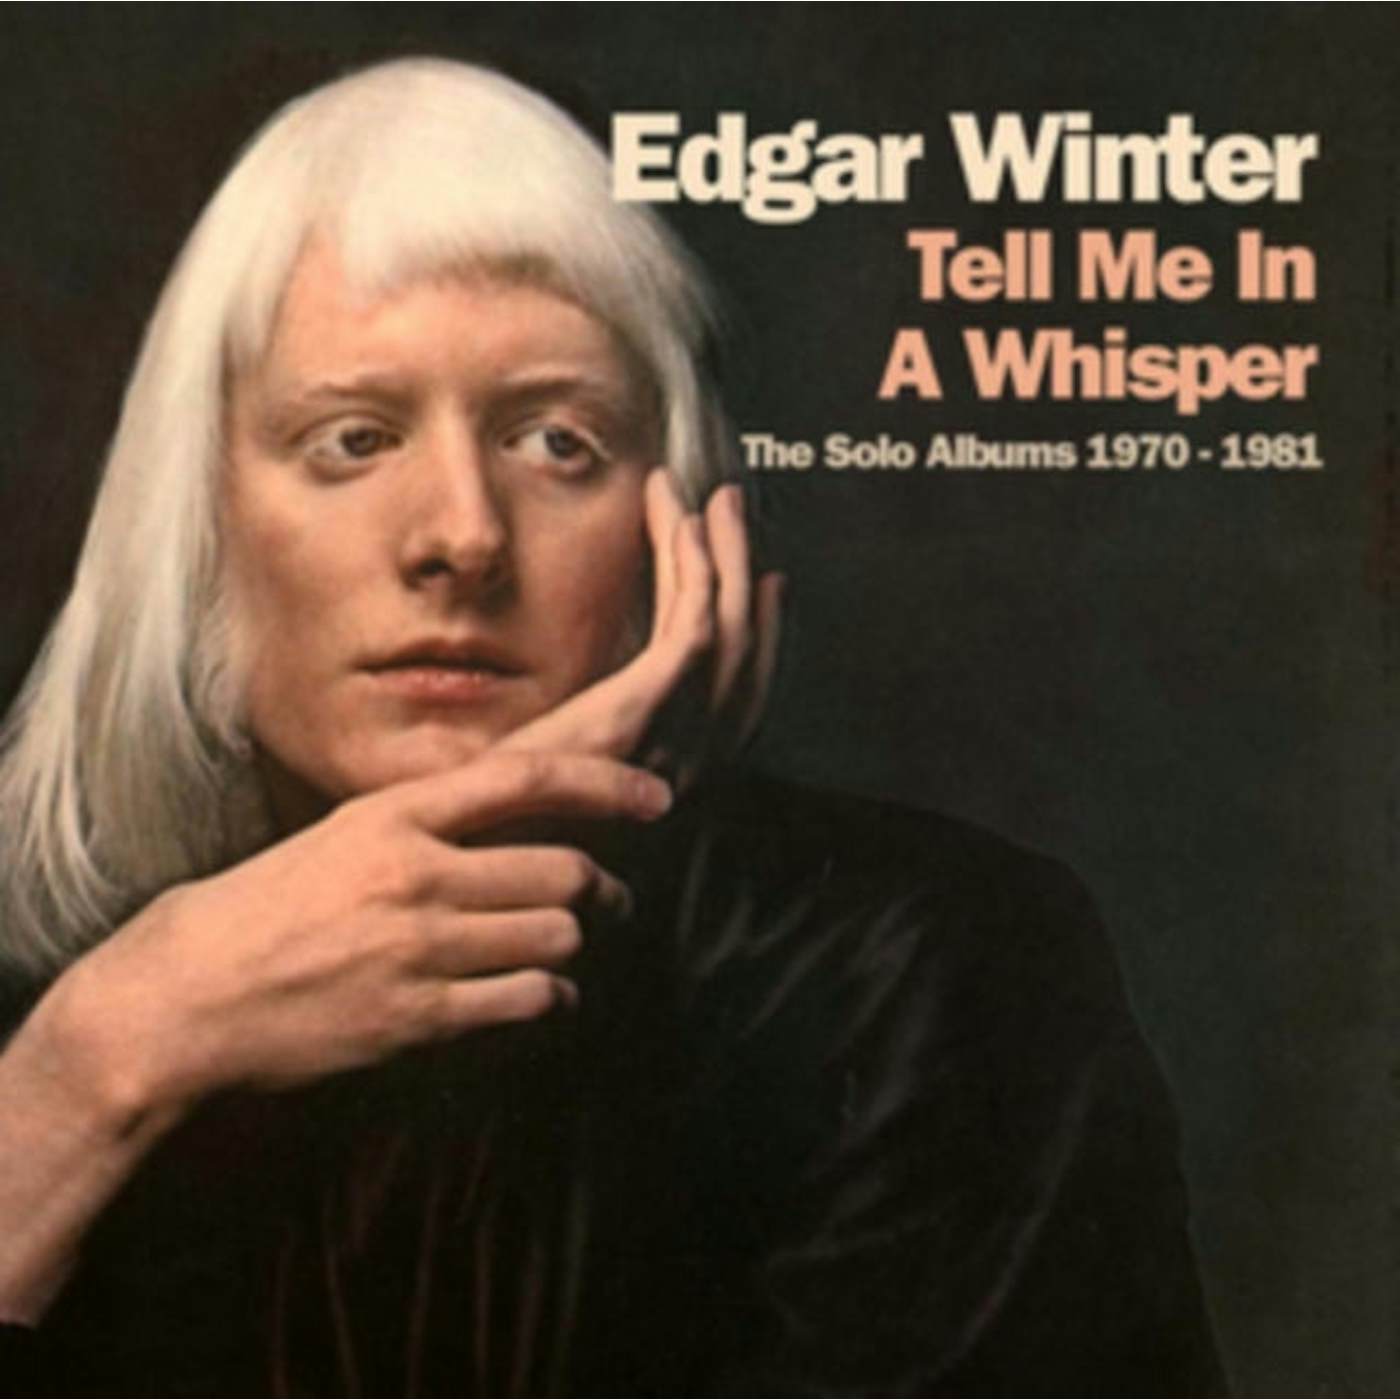 Edgar Winter CD - Tell Me In A Whisper